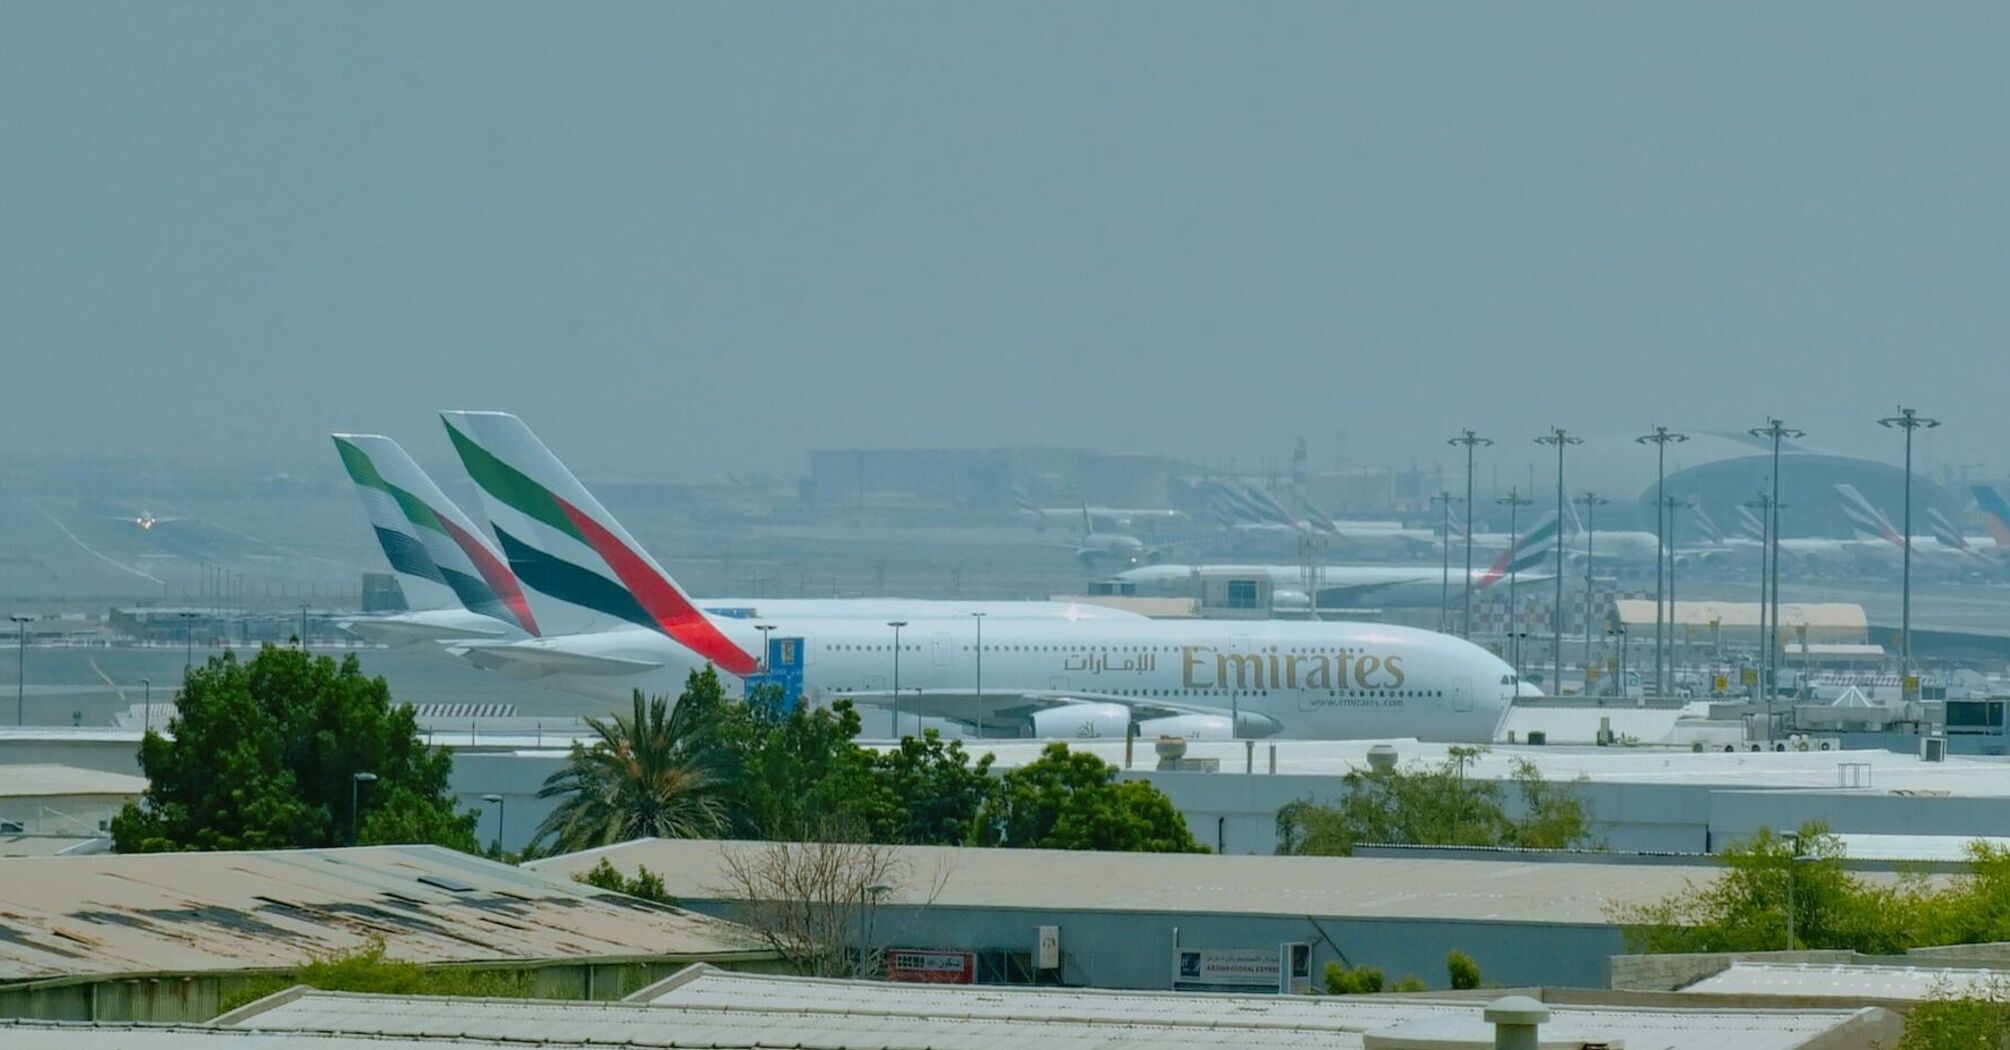 Emirates aircrafts at Dubai International Airport